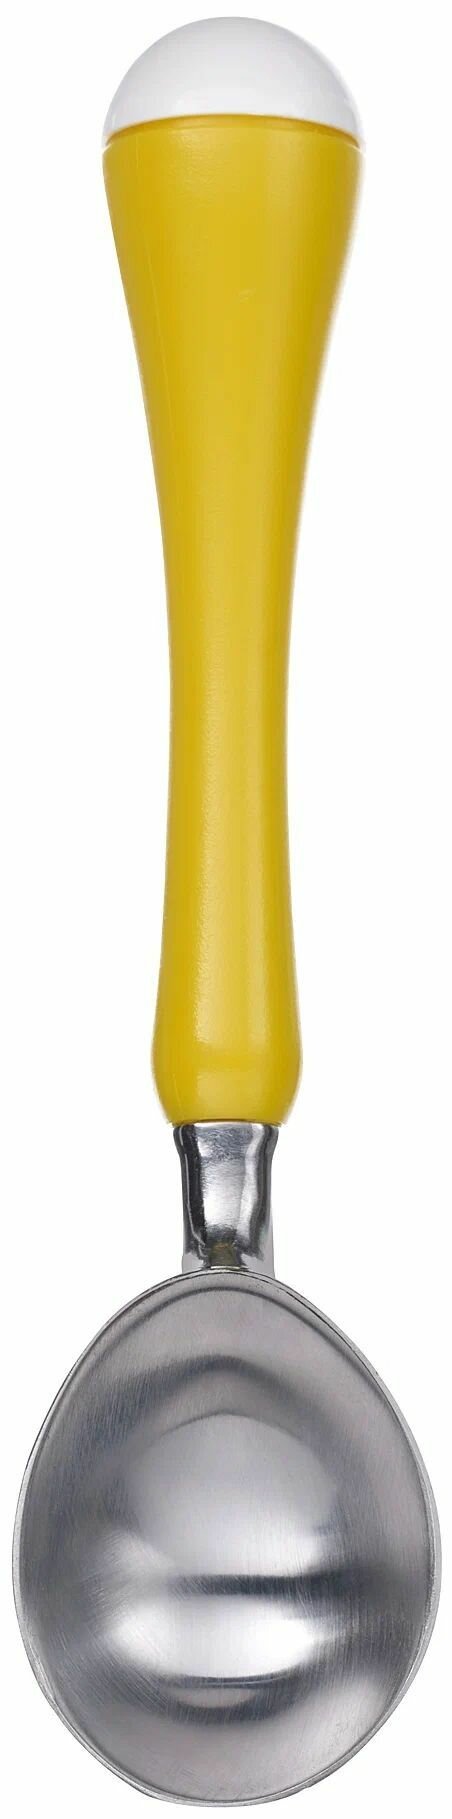 Ложка для мороженого икеа чосигт. 18,5 см. желтый. IKEA CHOSIGT. 1 ШТ.